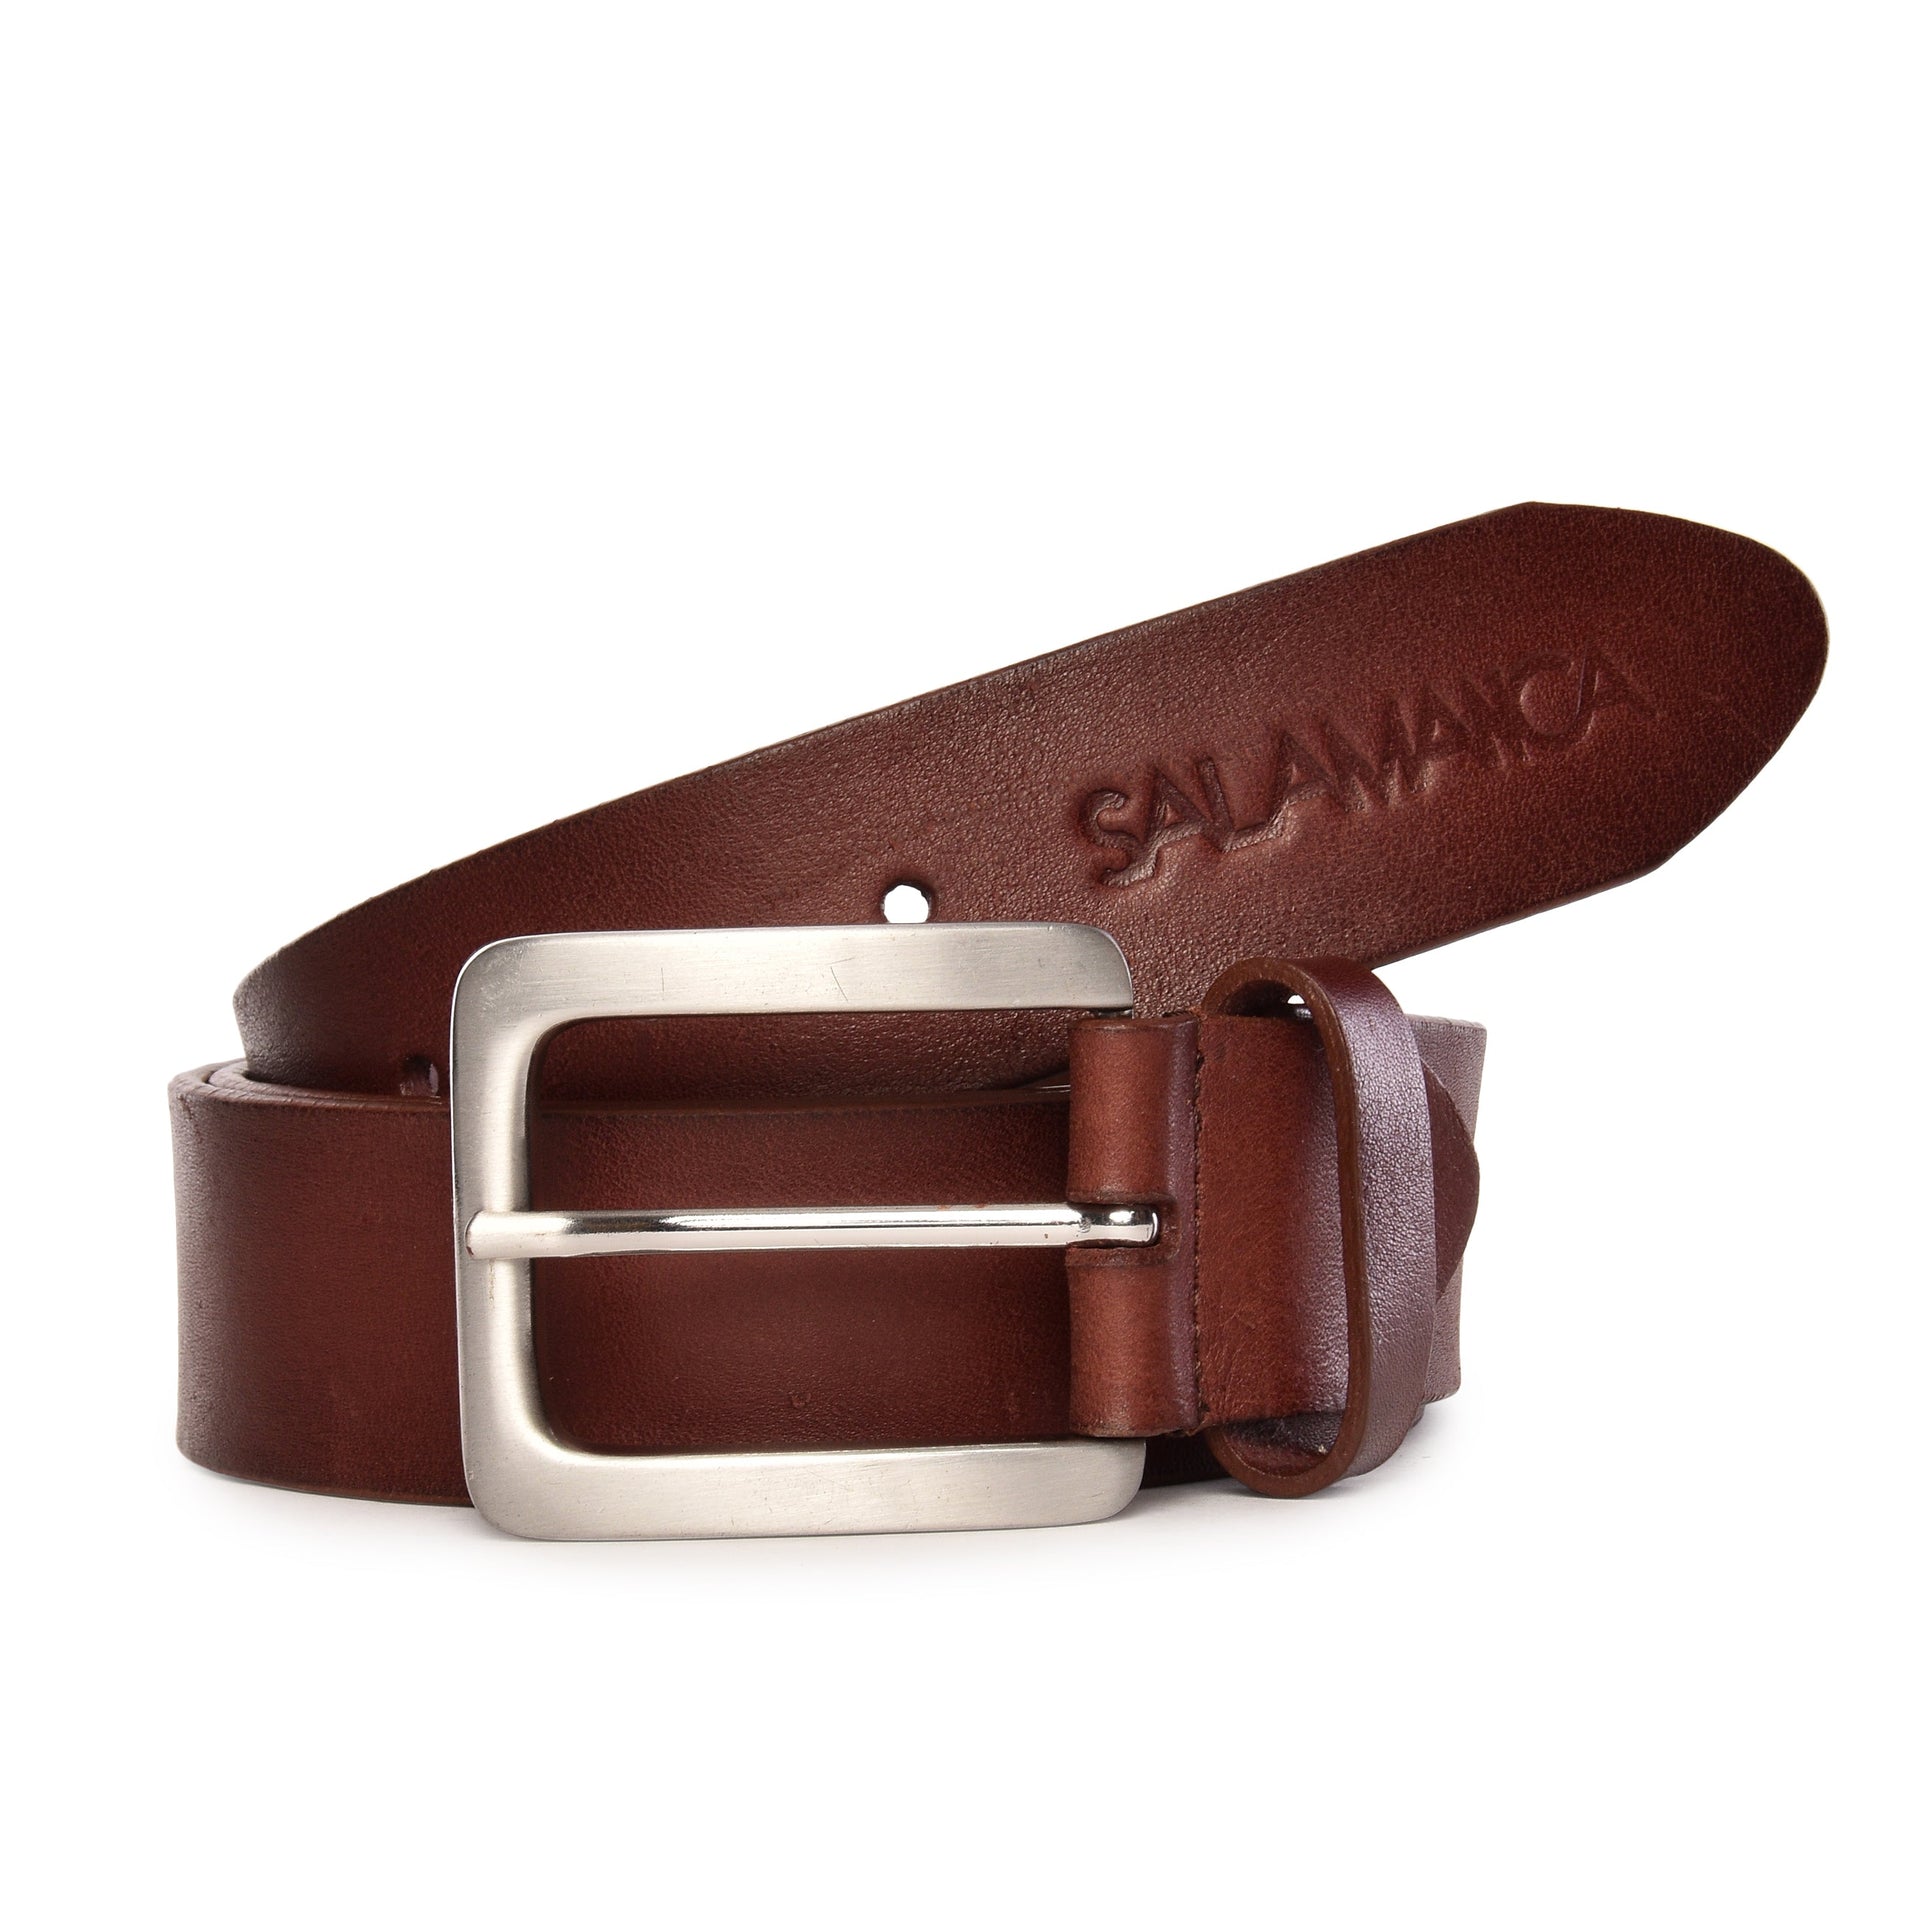 Palma Belt - Bordeaux / 30 inch - 75 cm - Belts